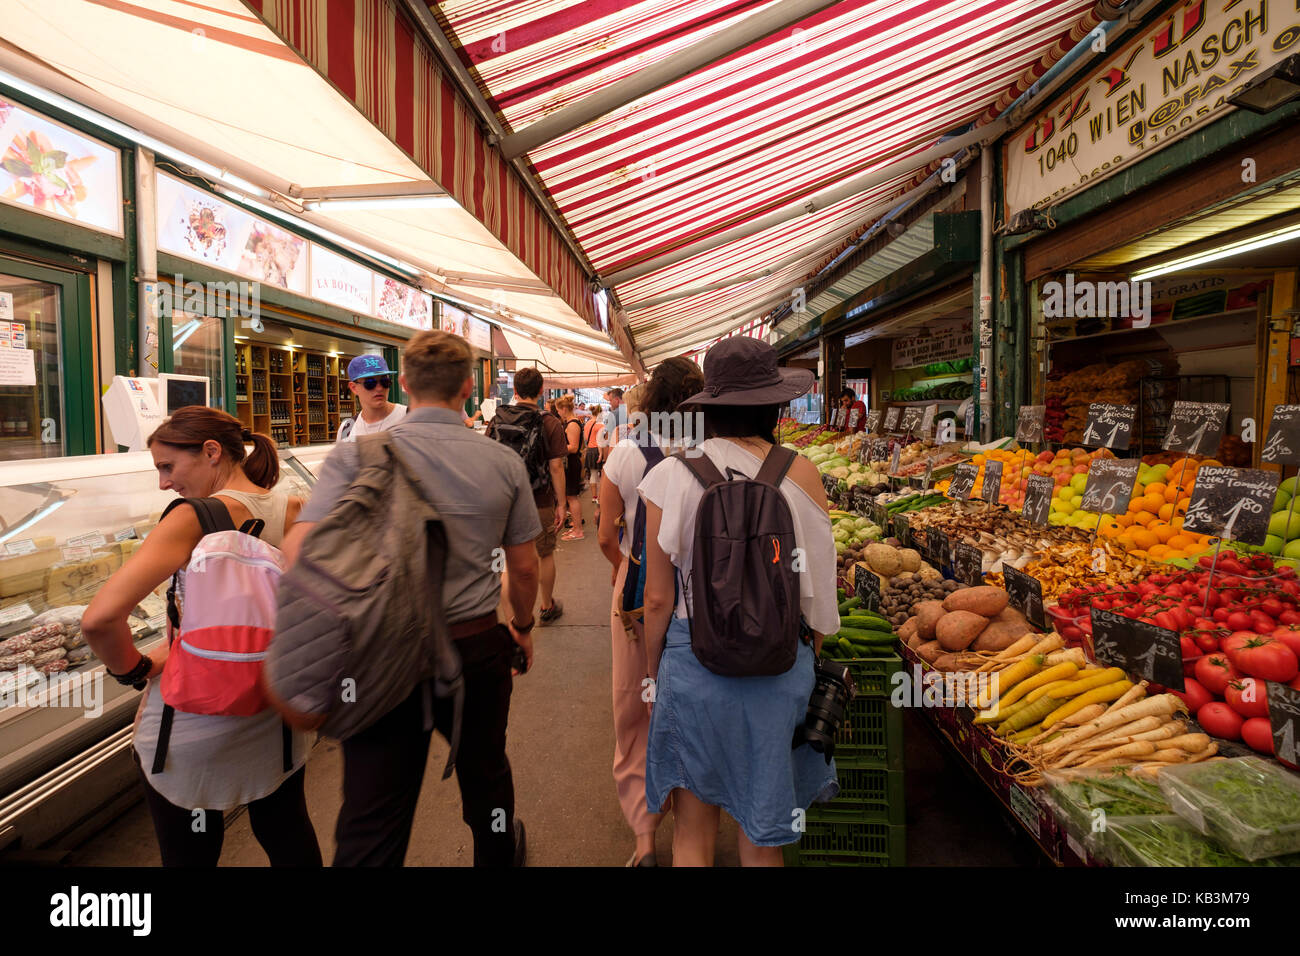 Naschmarkt in Vienna, Austria, Europe Stock Photo